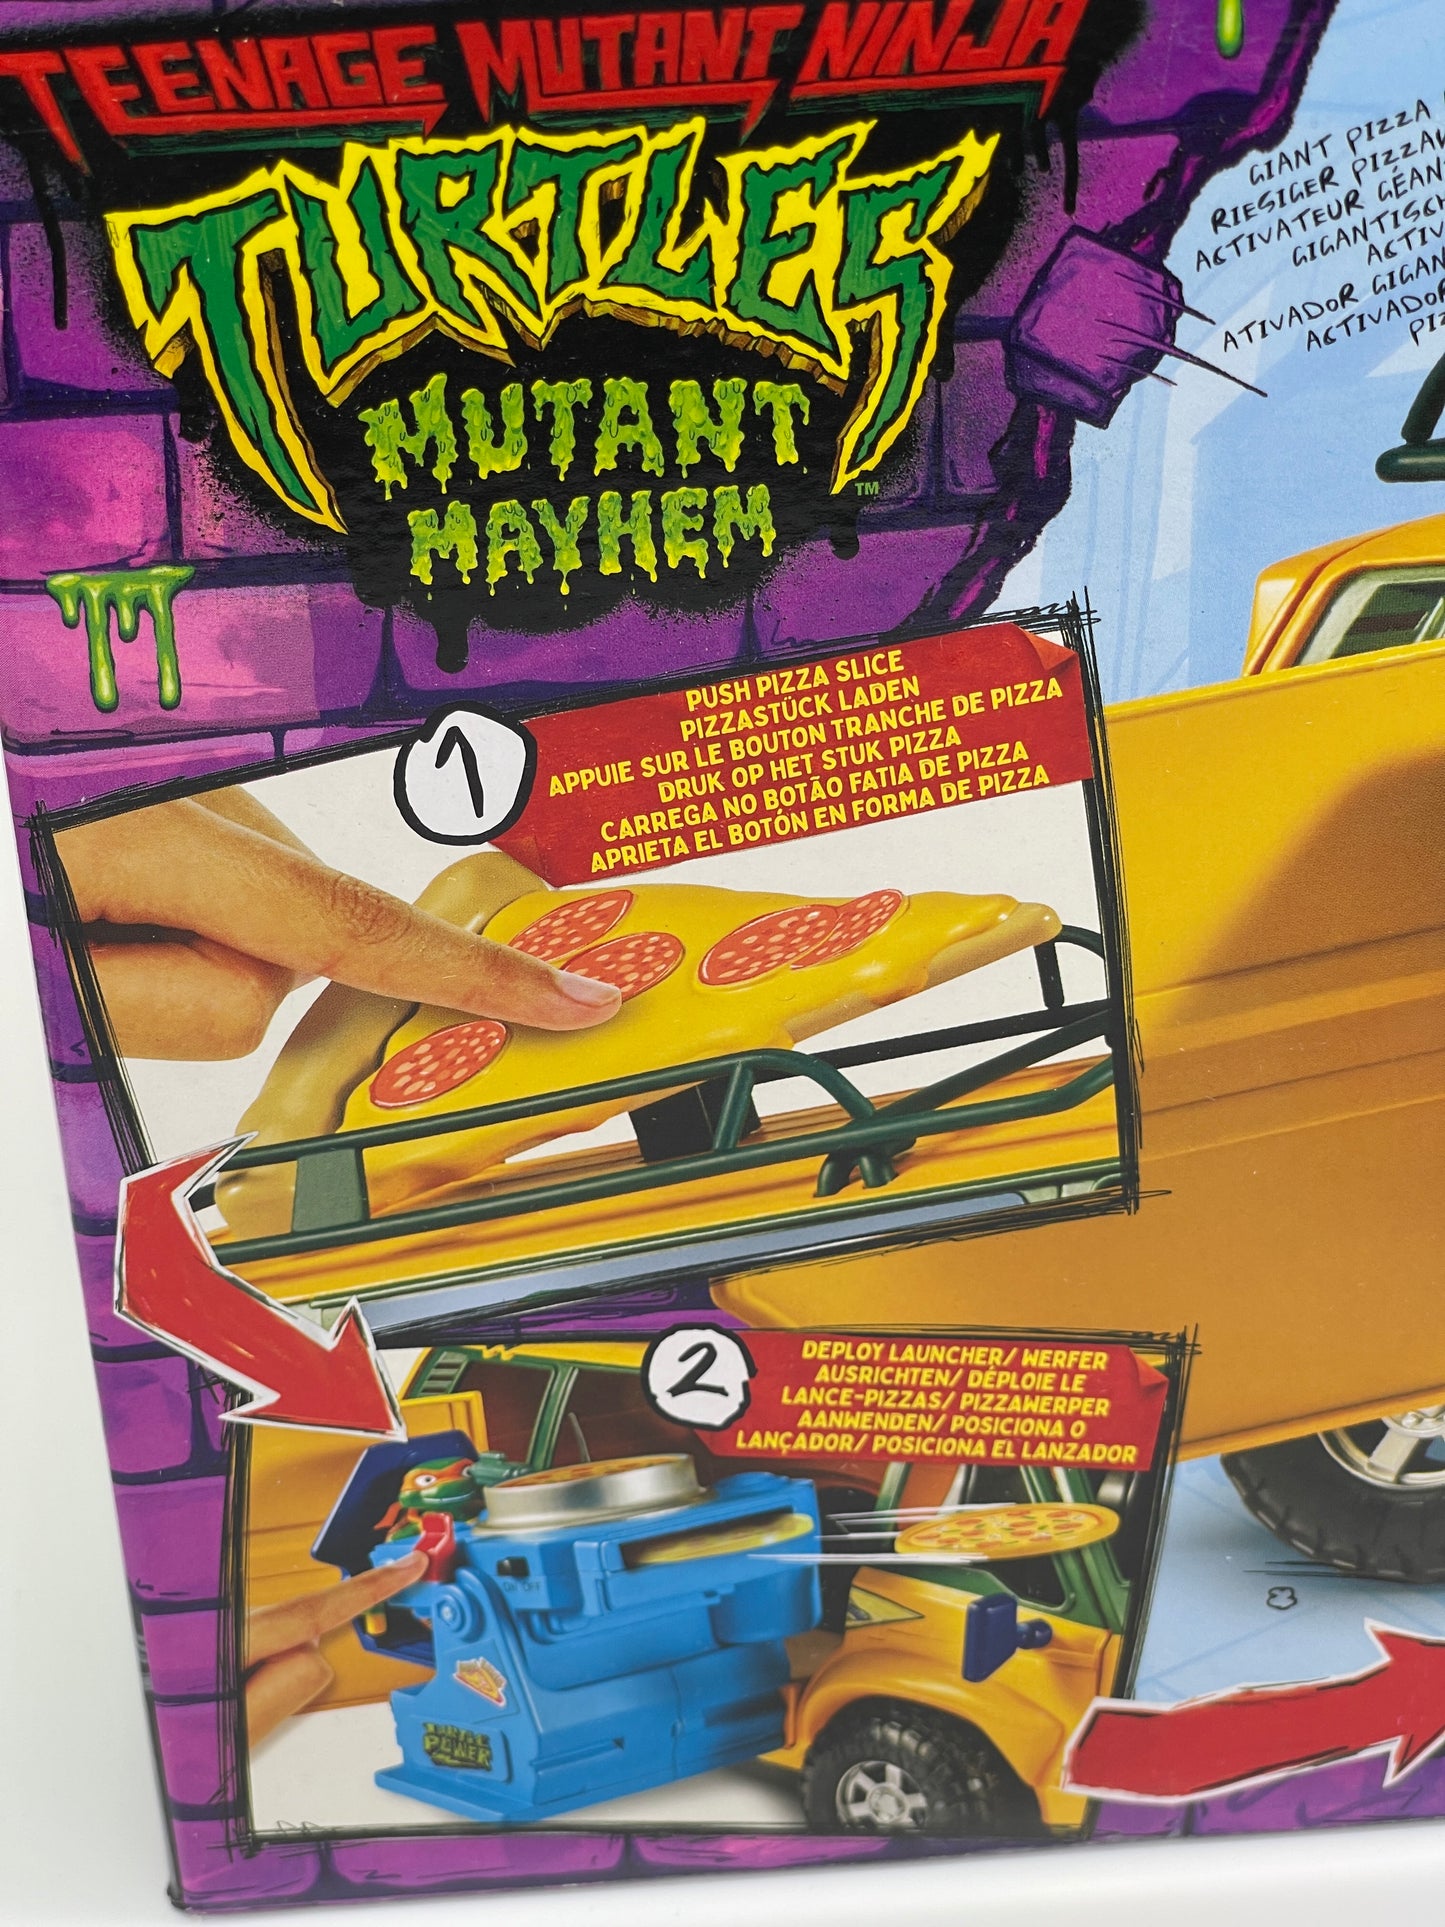 Teenage Mutant Ninja Turtles: Mutant Mayhem Fahrzeug Pizzafire Van (2023)